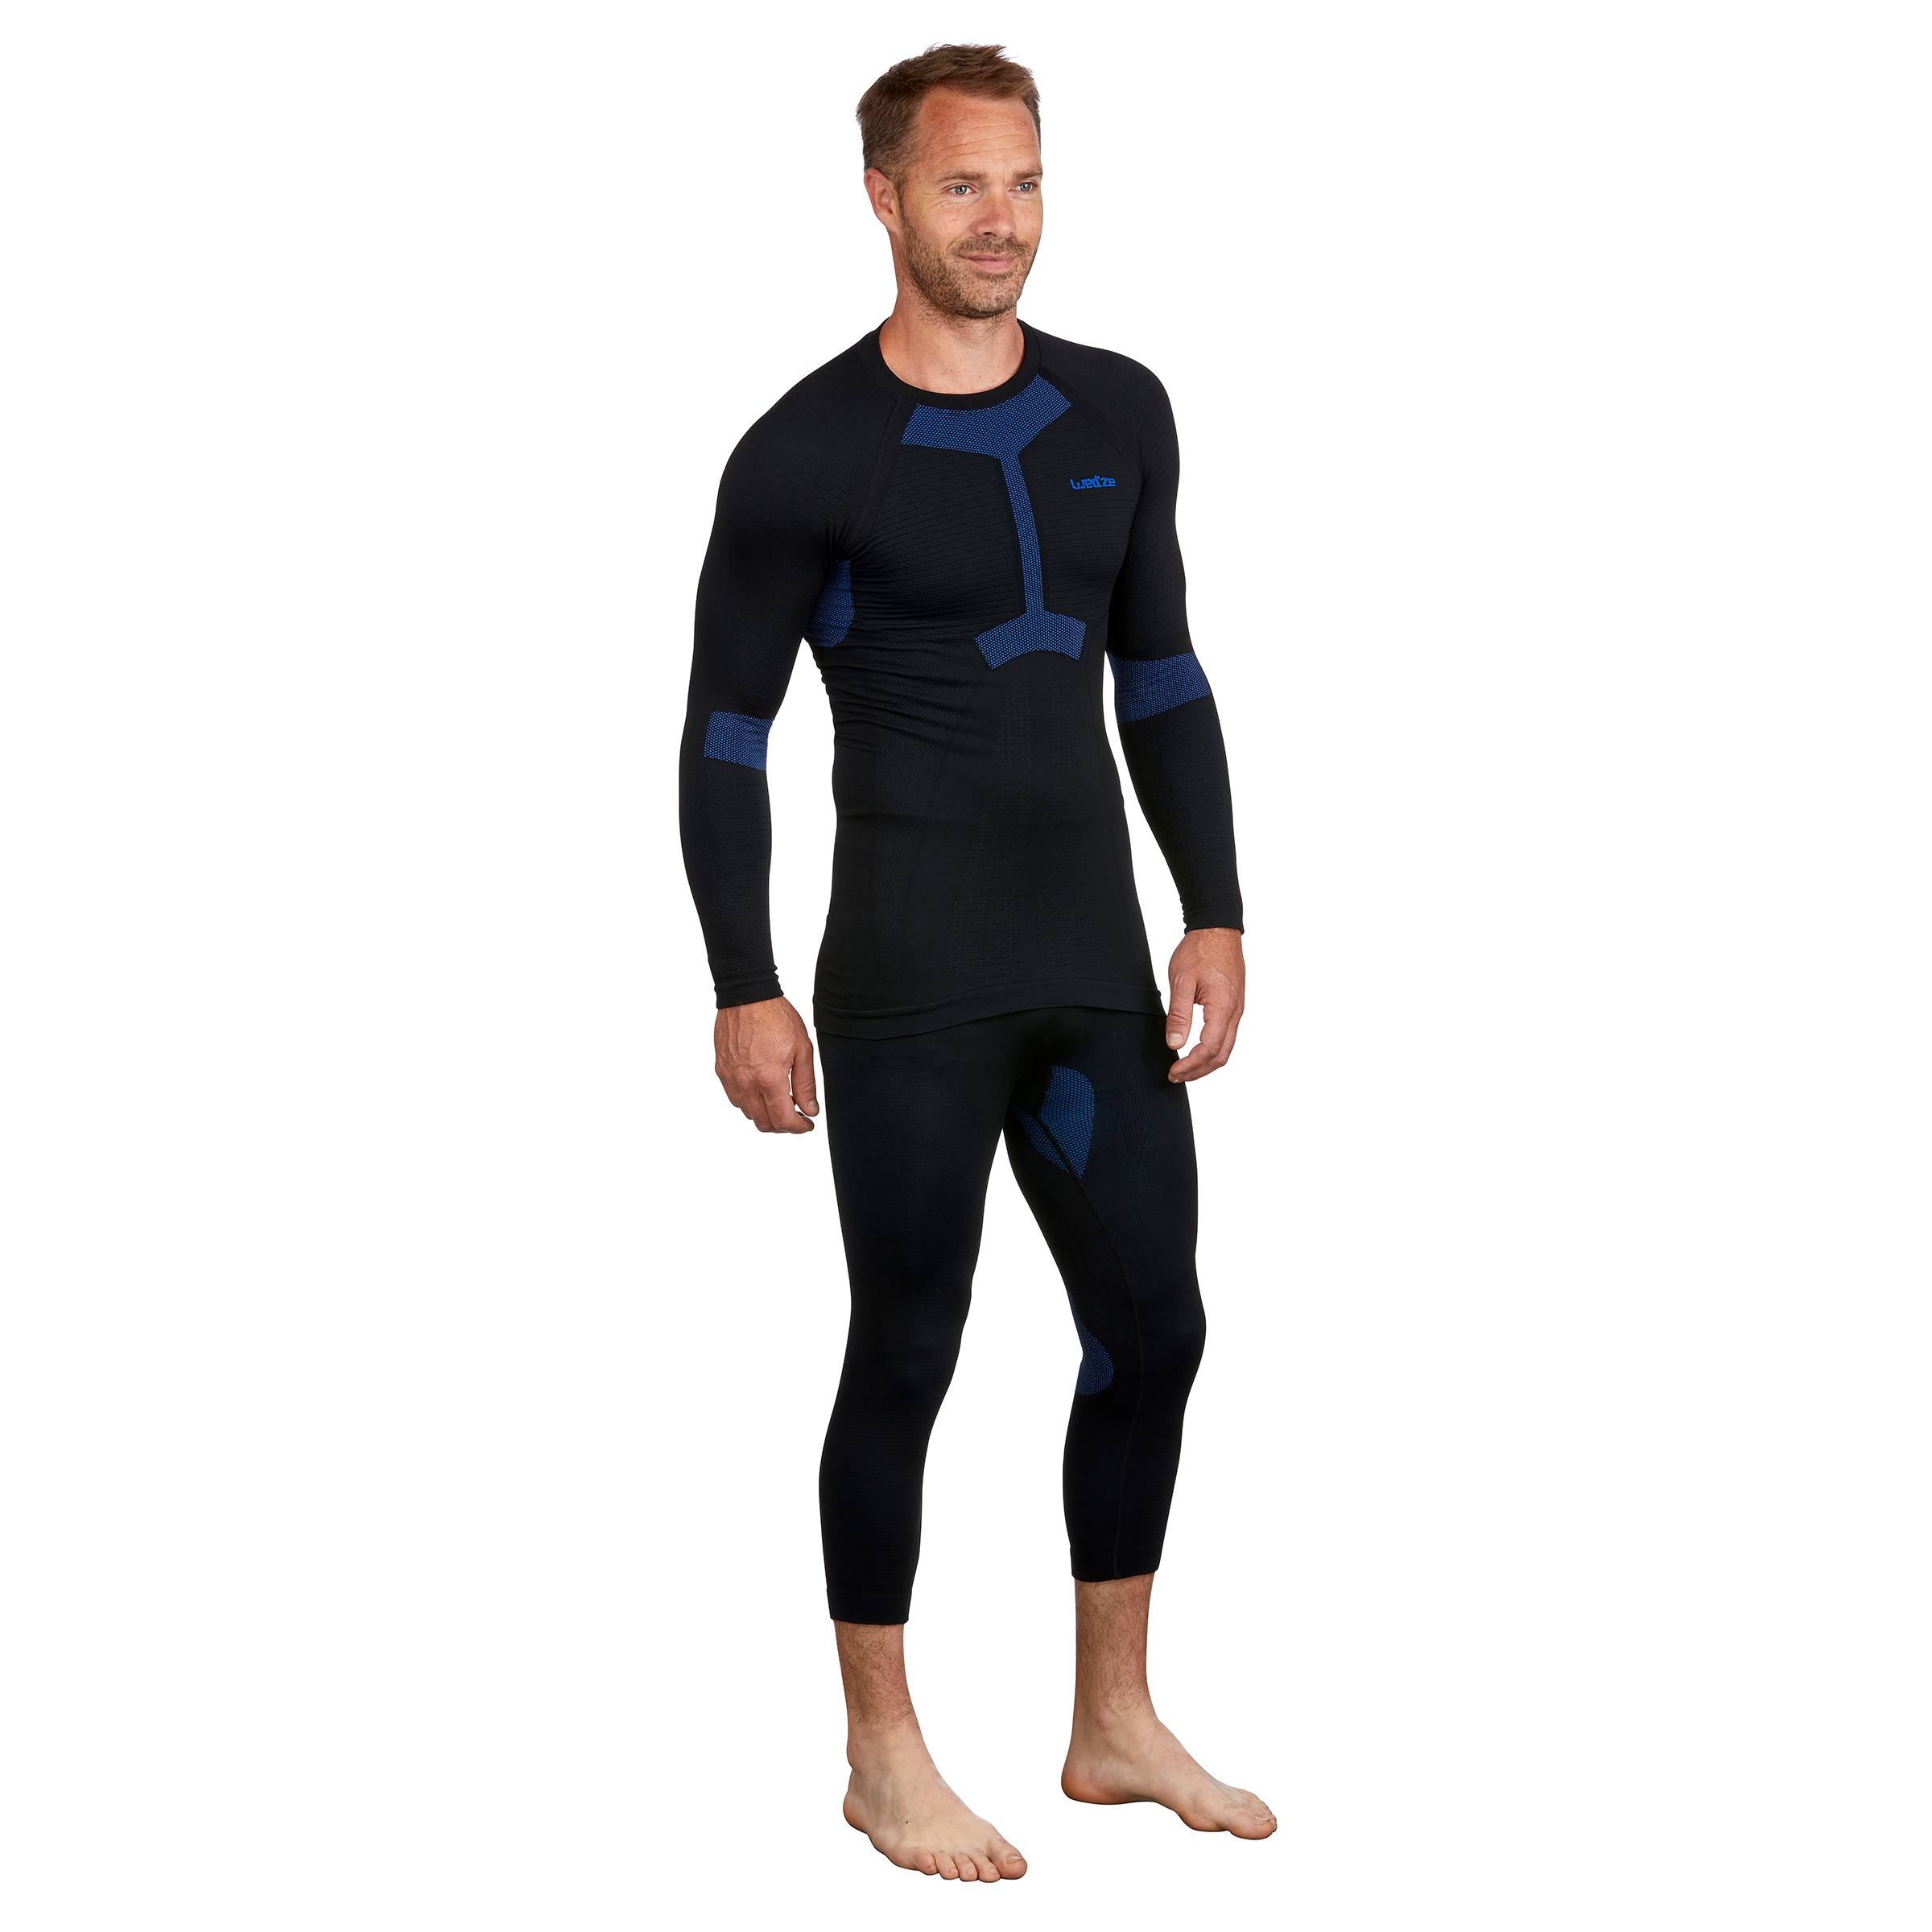 Sous-vêtement thermique de ski seamless homme BL 580 I-Soft haut -  noir/bleu pour les clubs et collectivités